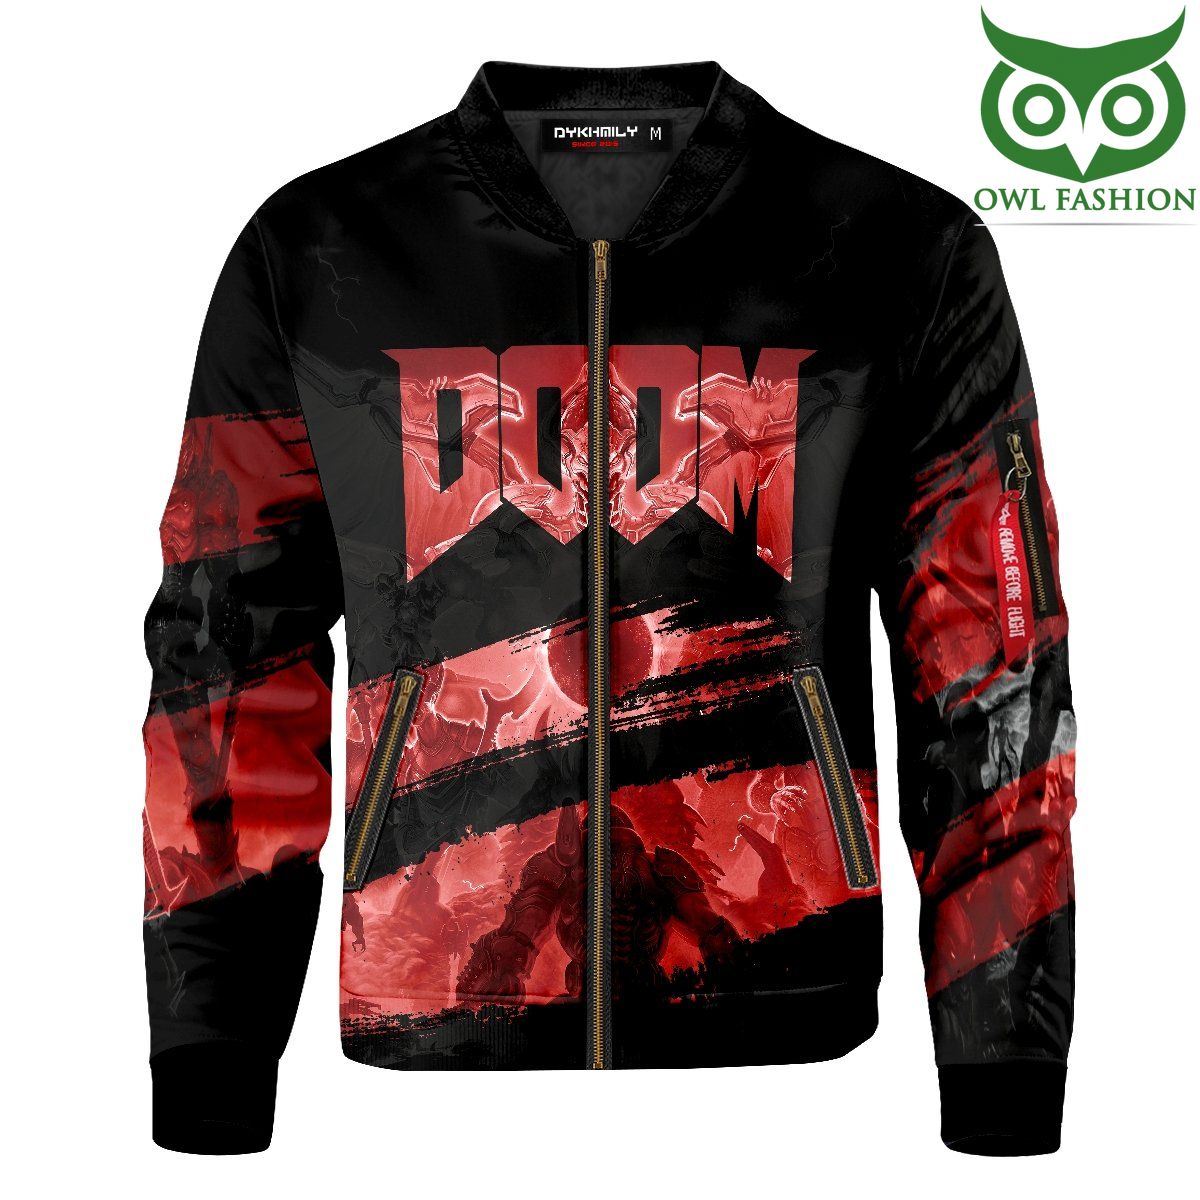 Doom Eternal Printed Bomber Jacket for fans